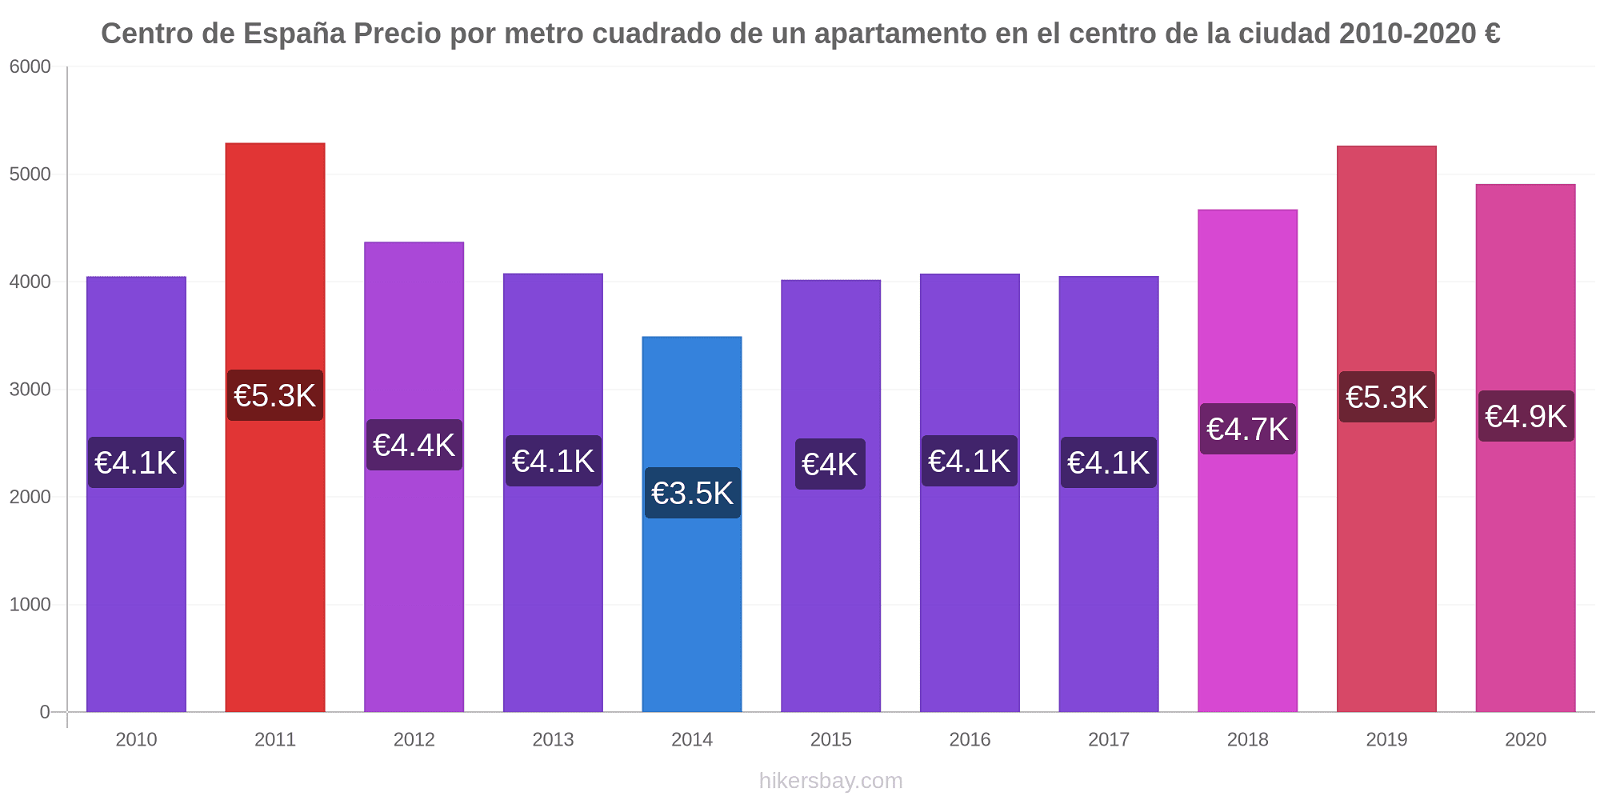 Centro de España cambios de precios Precio por metro cuadrado para comprar un apartamento en el centro de la ciudad hikersbay.com